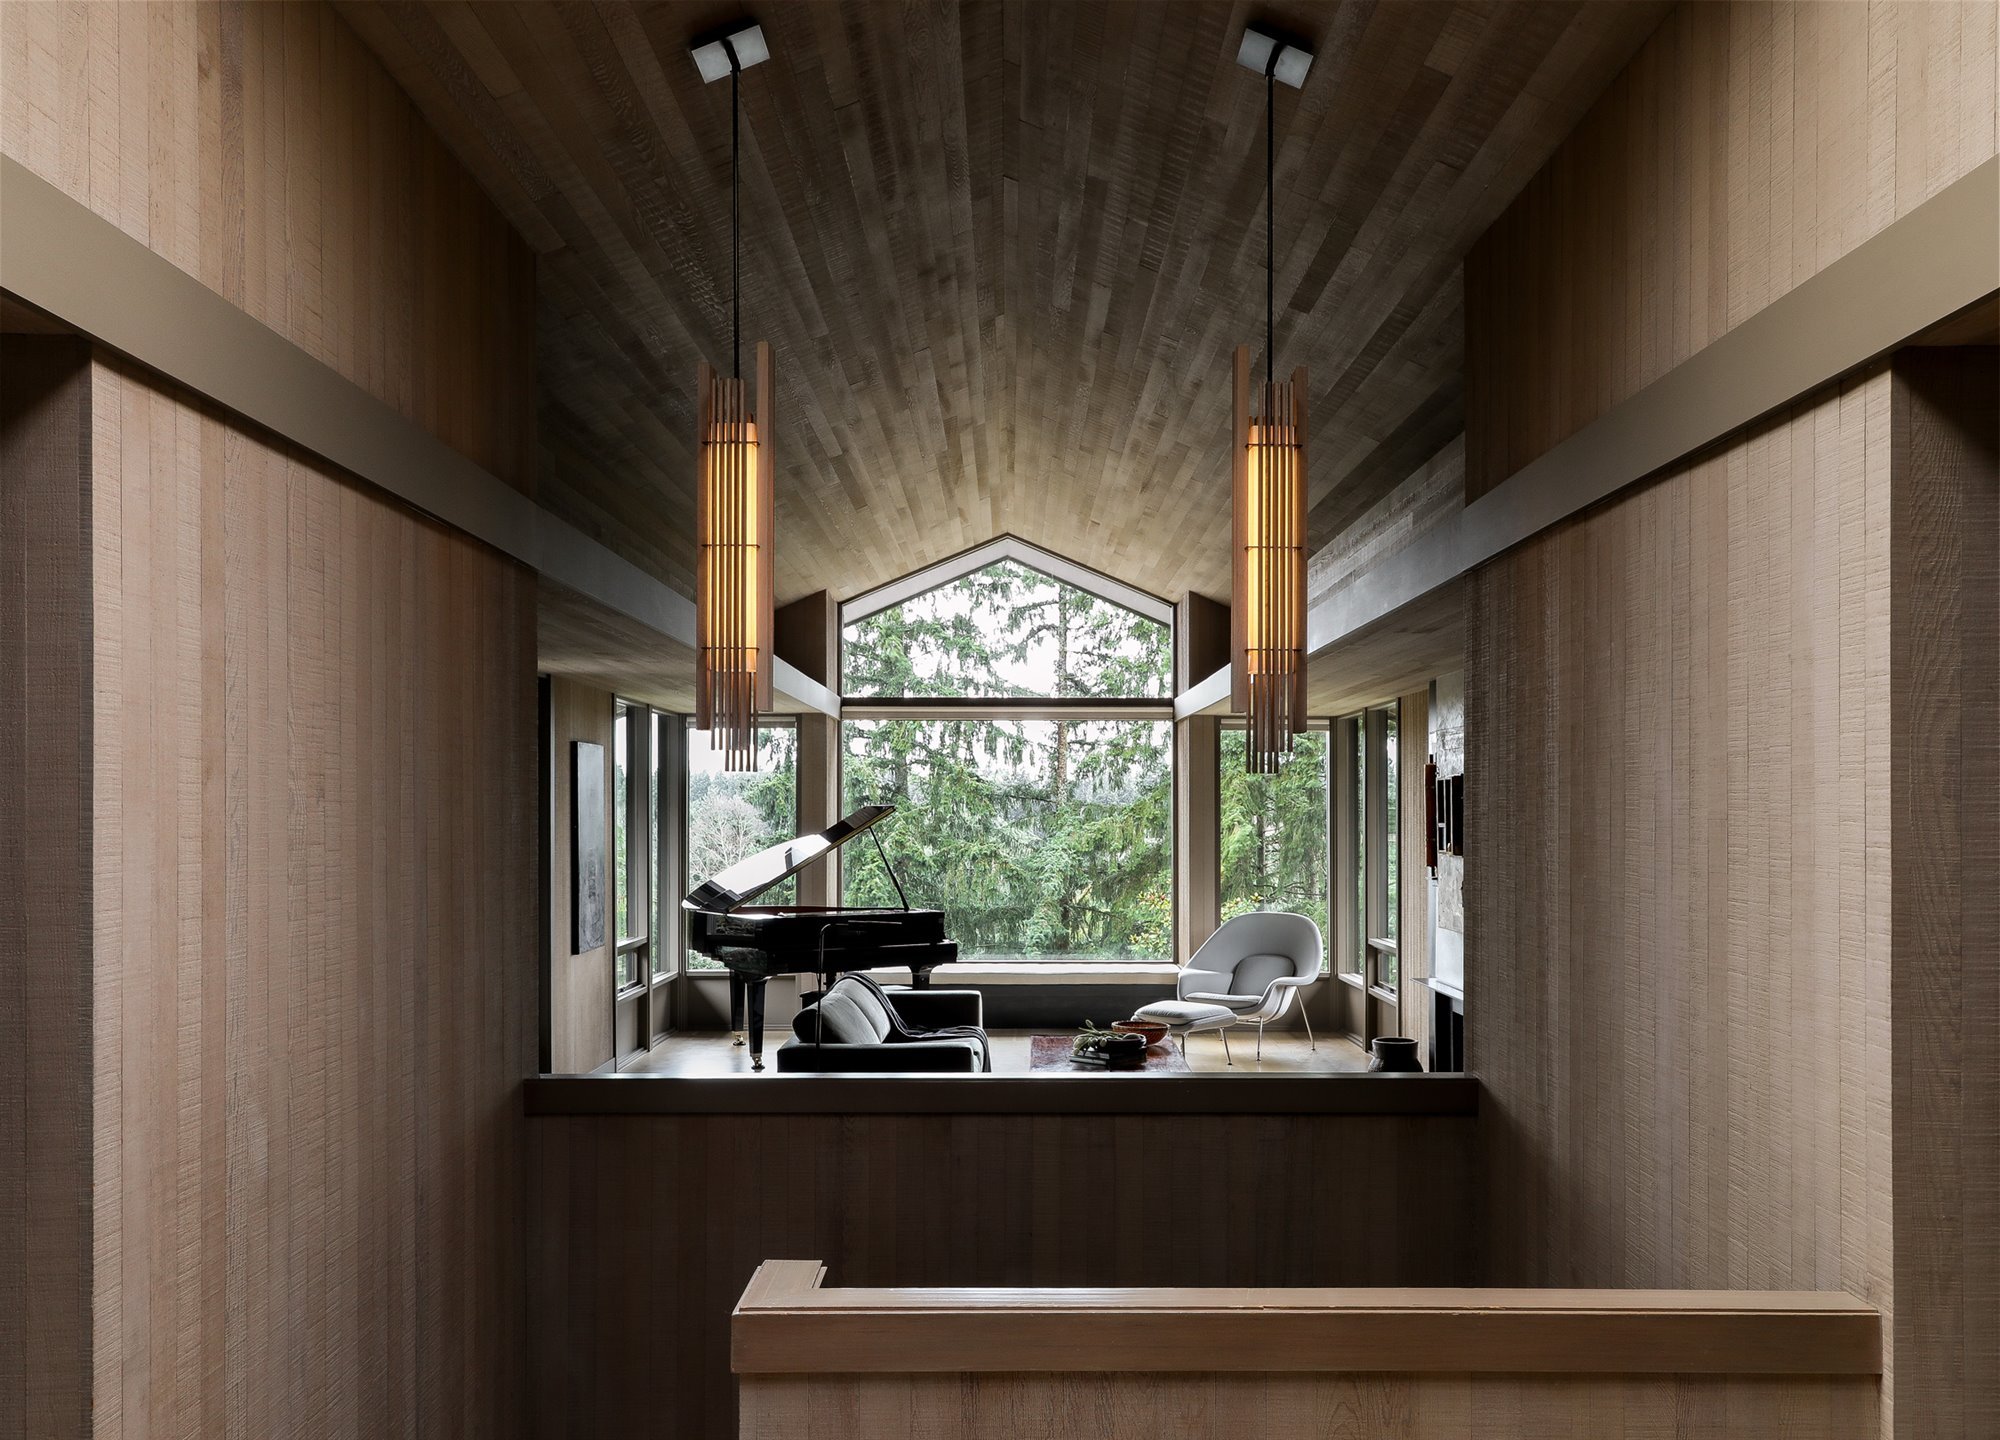 Casa moderna de madera con techo a dos aguas salon